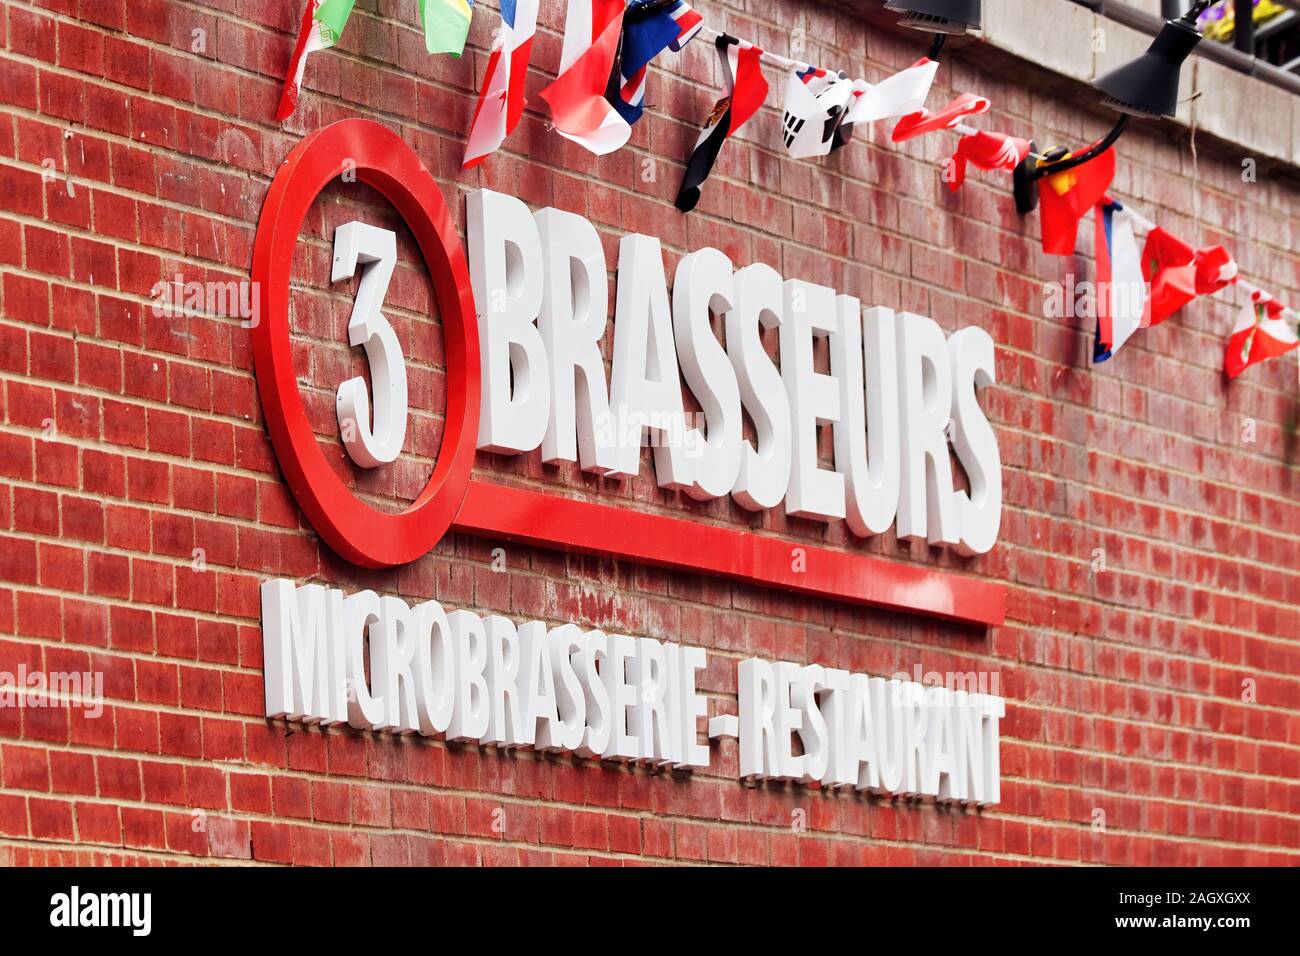 Le restaurant Les 3 Brasseurs de signer (les trois brasseurs), une société de restauration française spécialisée dans la microbrasserie de Montréal, Canada Banque D'Images